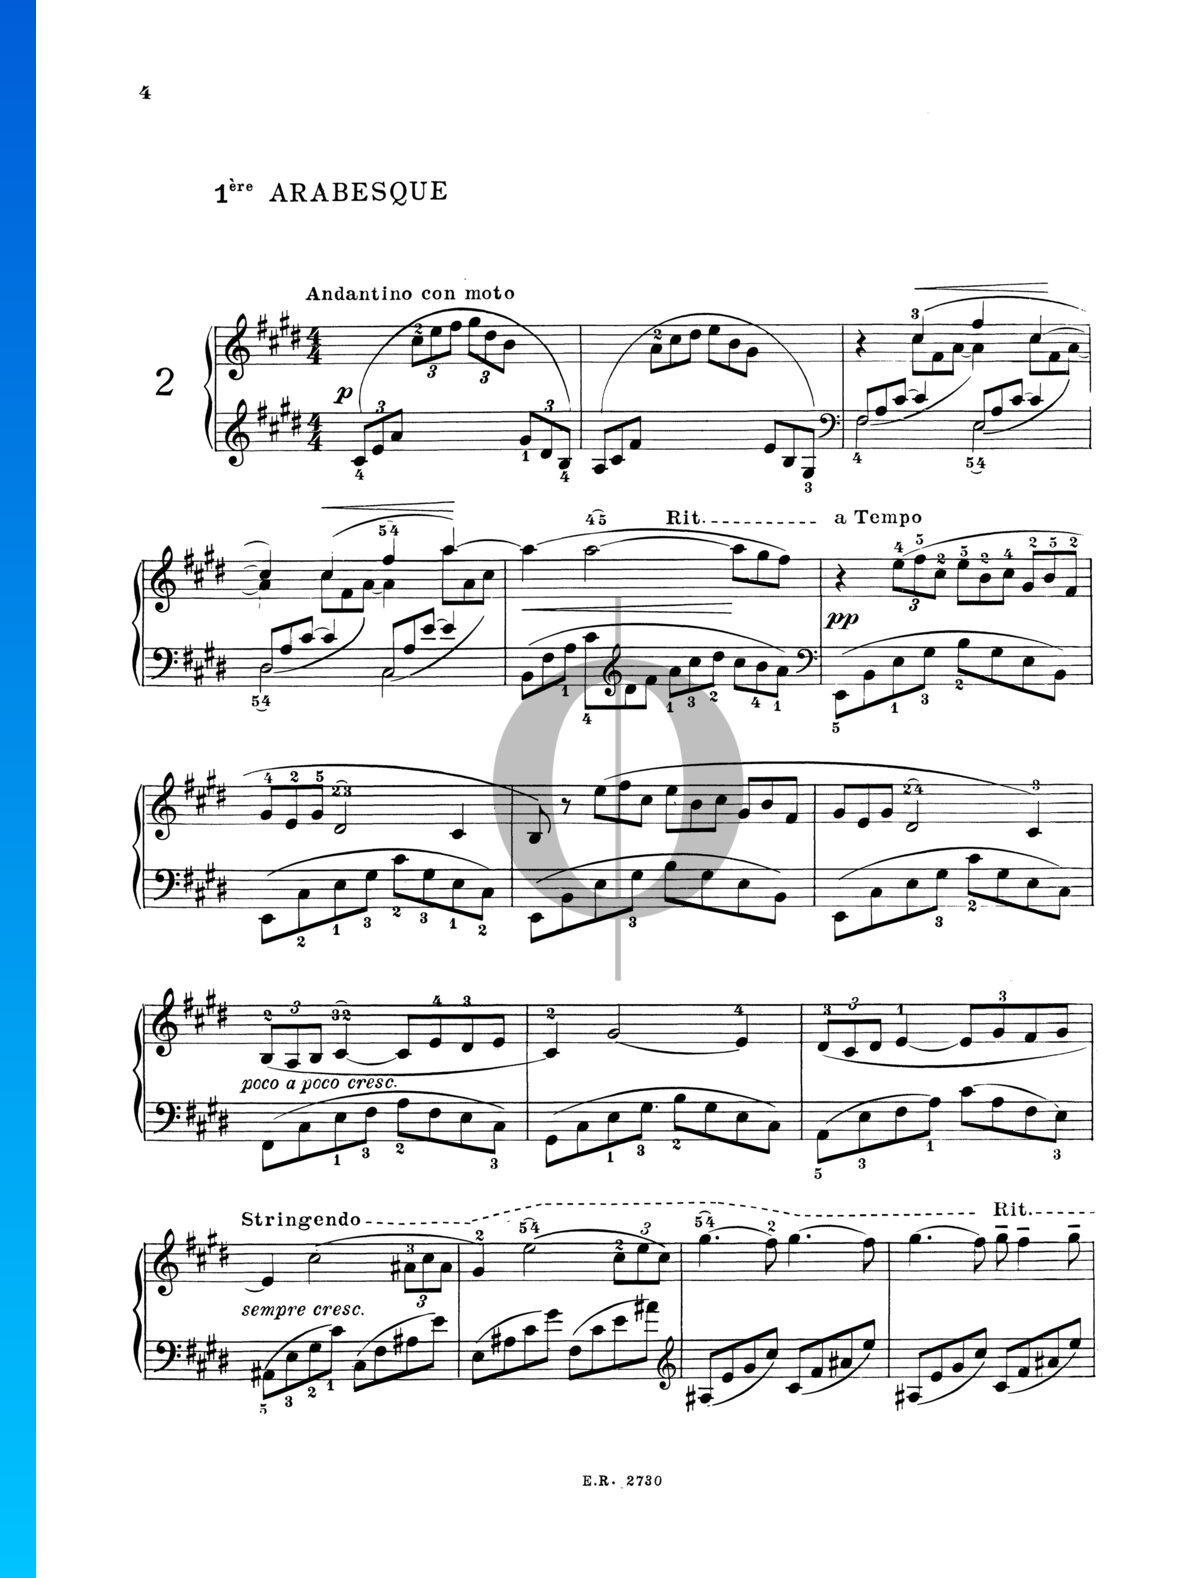 Arabesque No. 1 Sheet Music (Piano Solo) - OKTAV